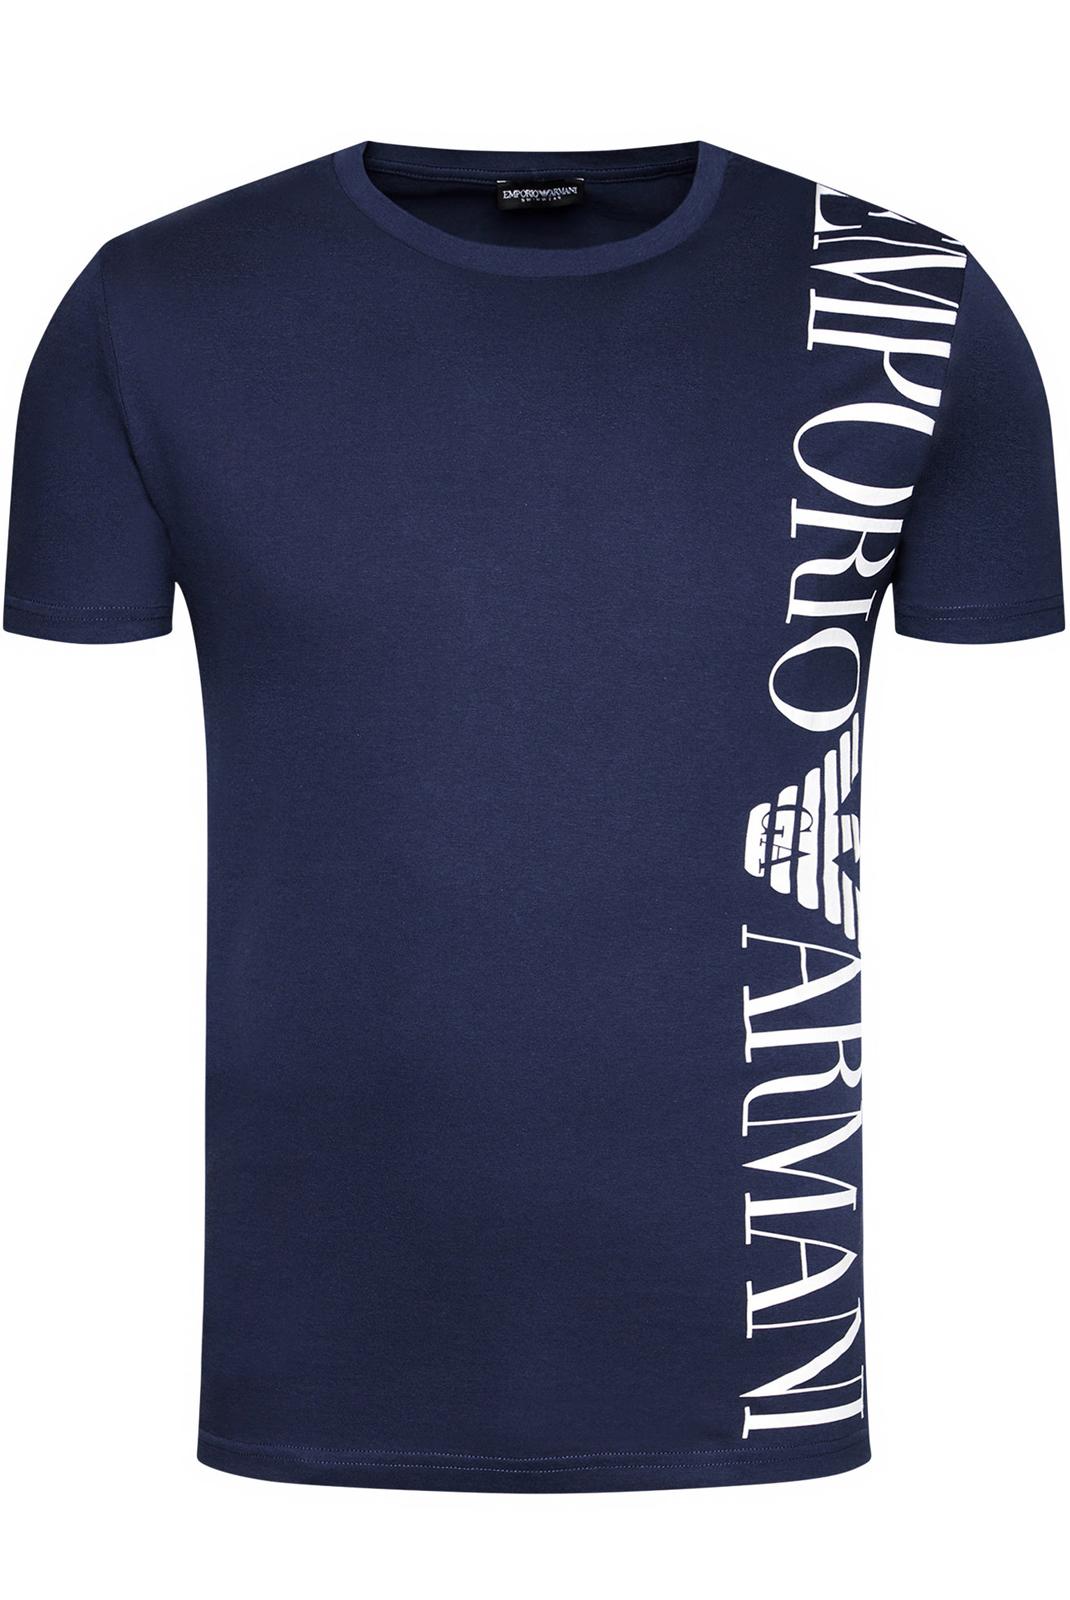  T-shirt Bleu Manches Courtes 211831 1p469 Emporio Armani